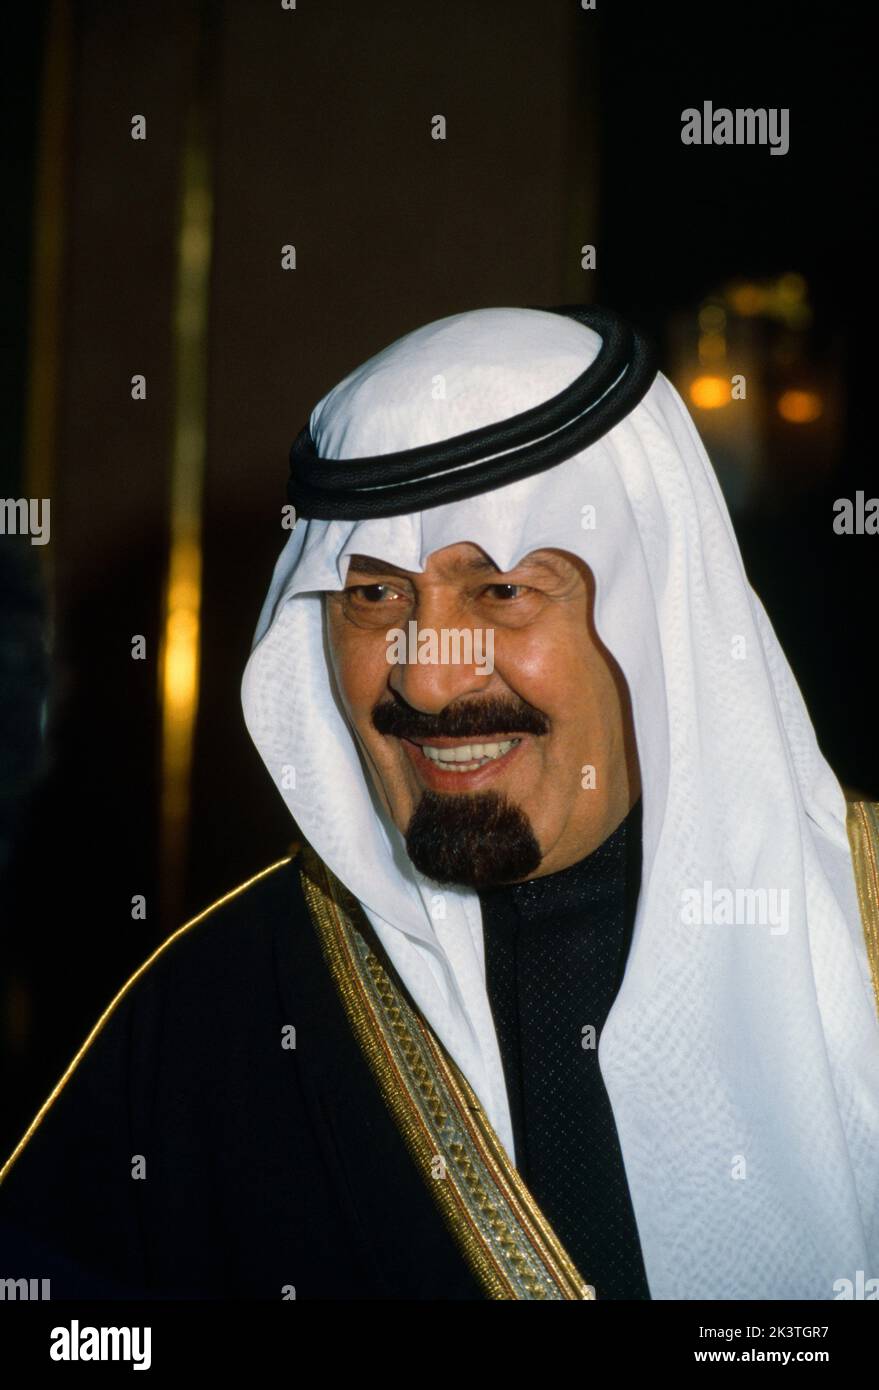 Arabia Saudita Principe Abdullah Bin Abdulaziz al Saud ex re dell'Arabia Saudita che regna tra il 2005 e il 2015 Foto Stock